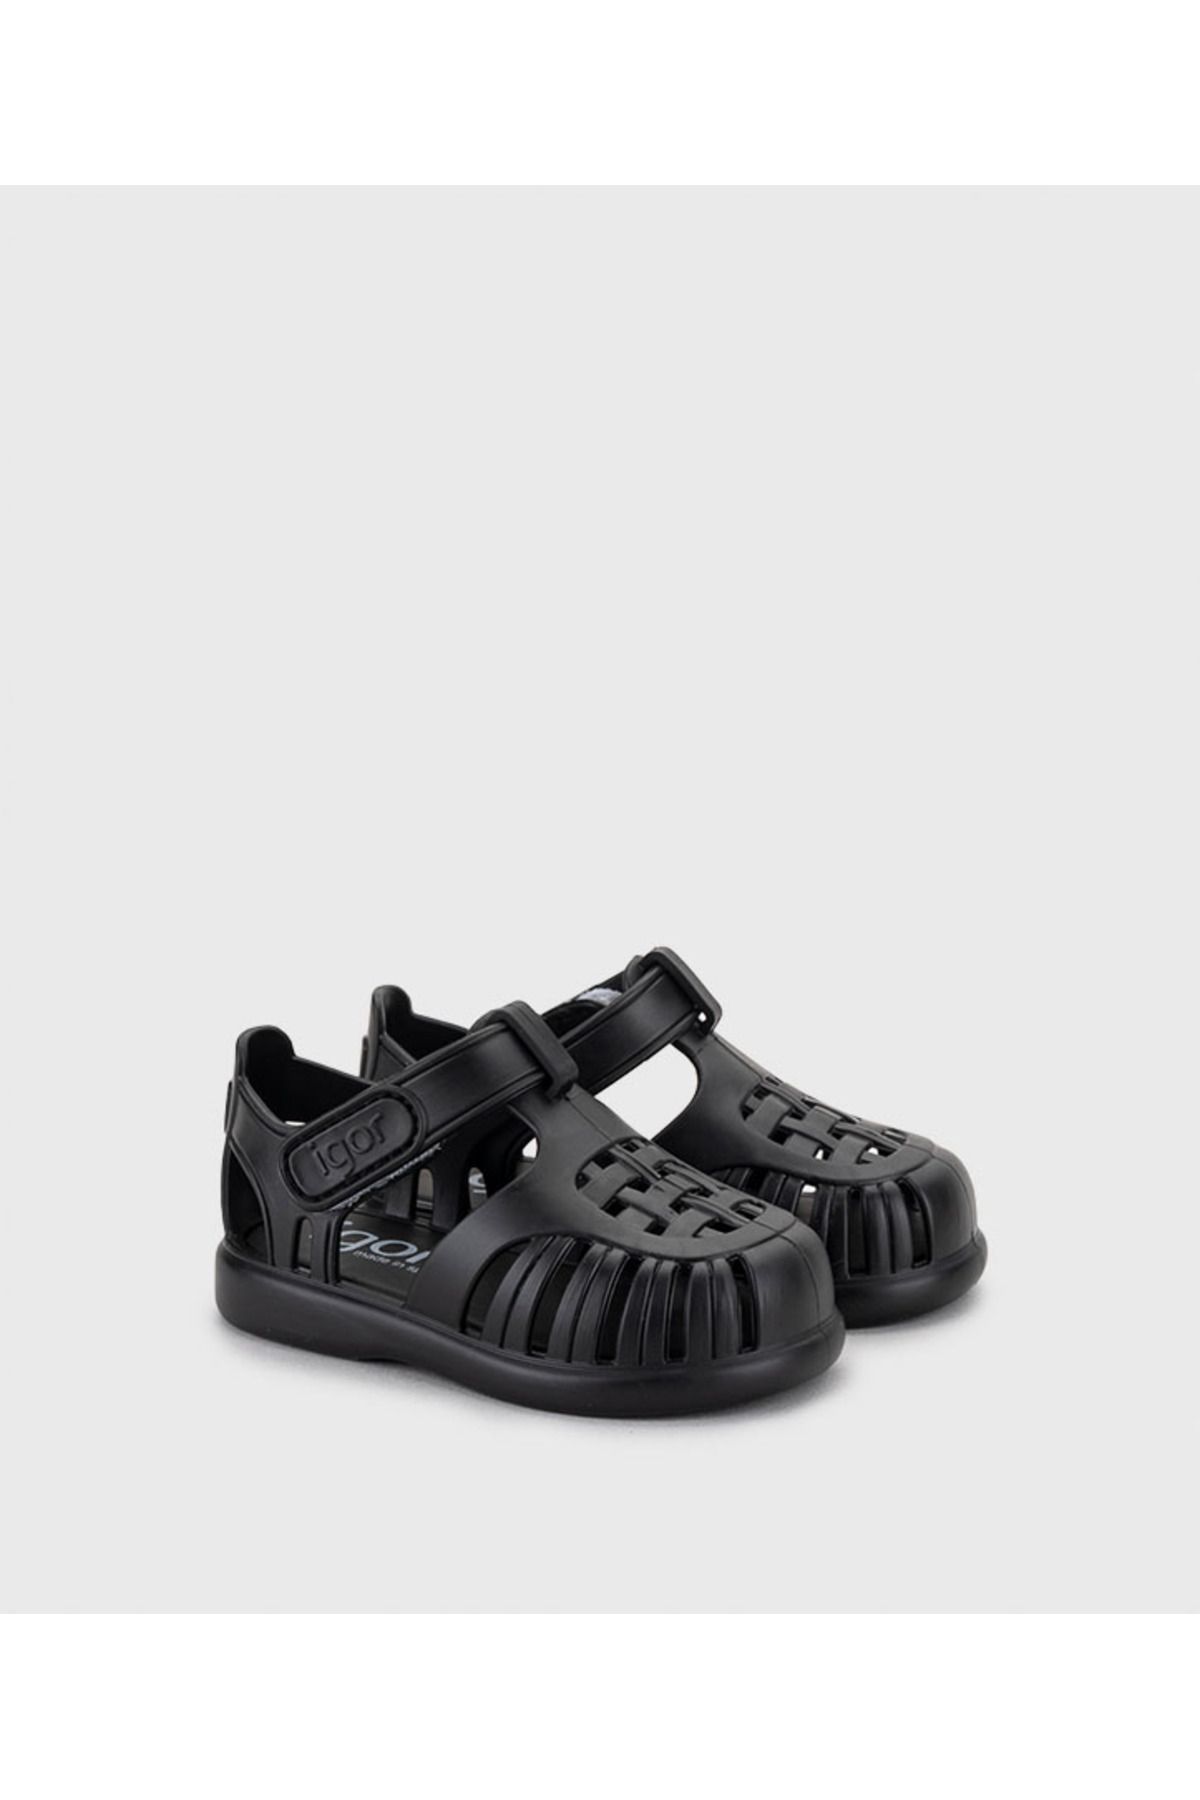 IGOR Tobby Solid Negro Black Çocuk Sandalet S10271-002